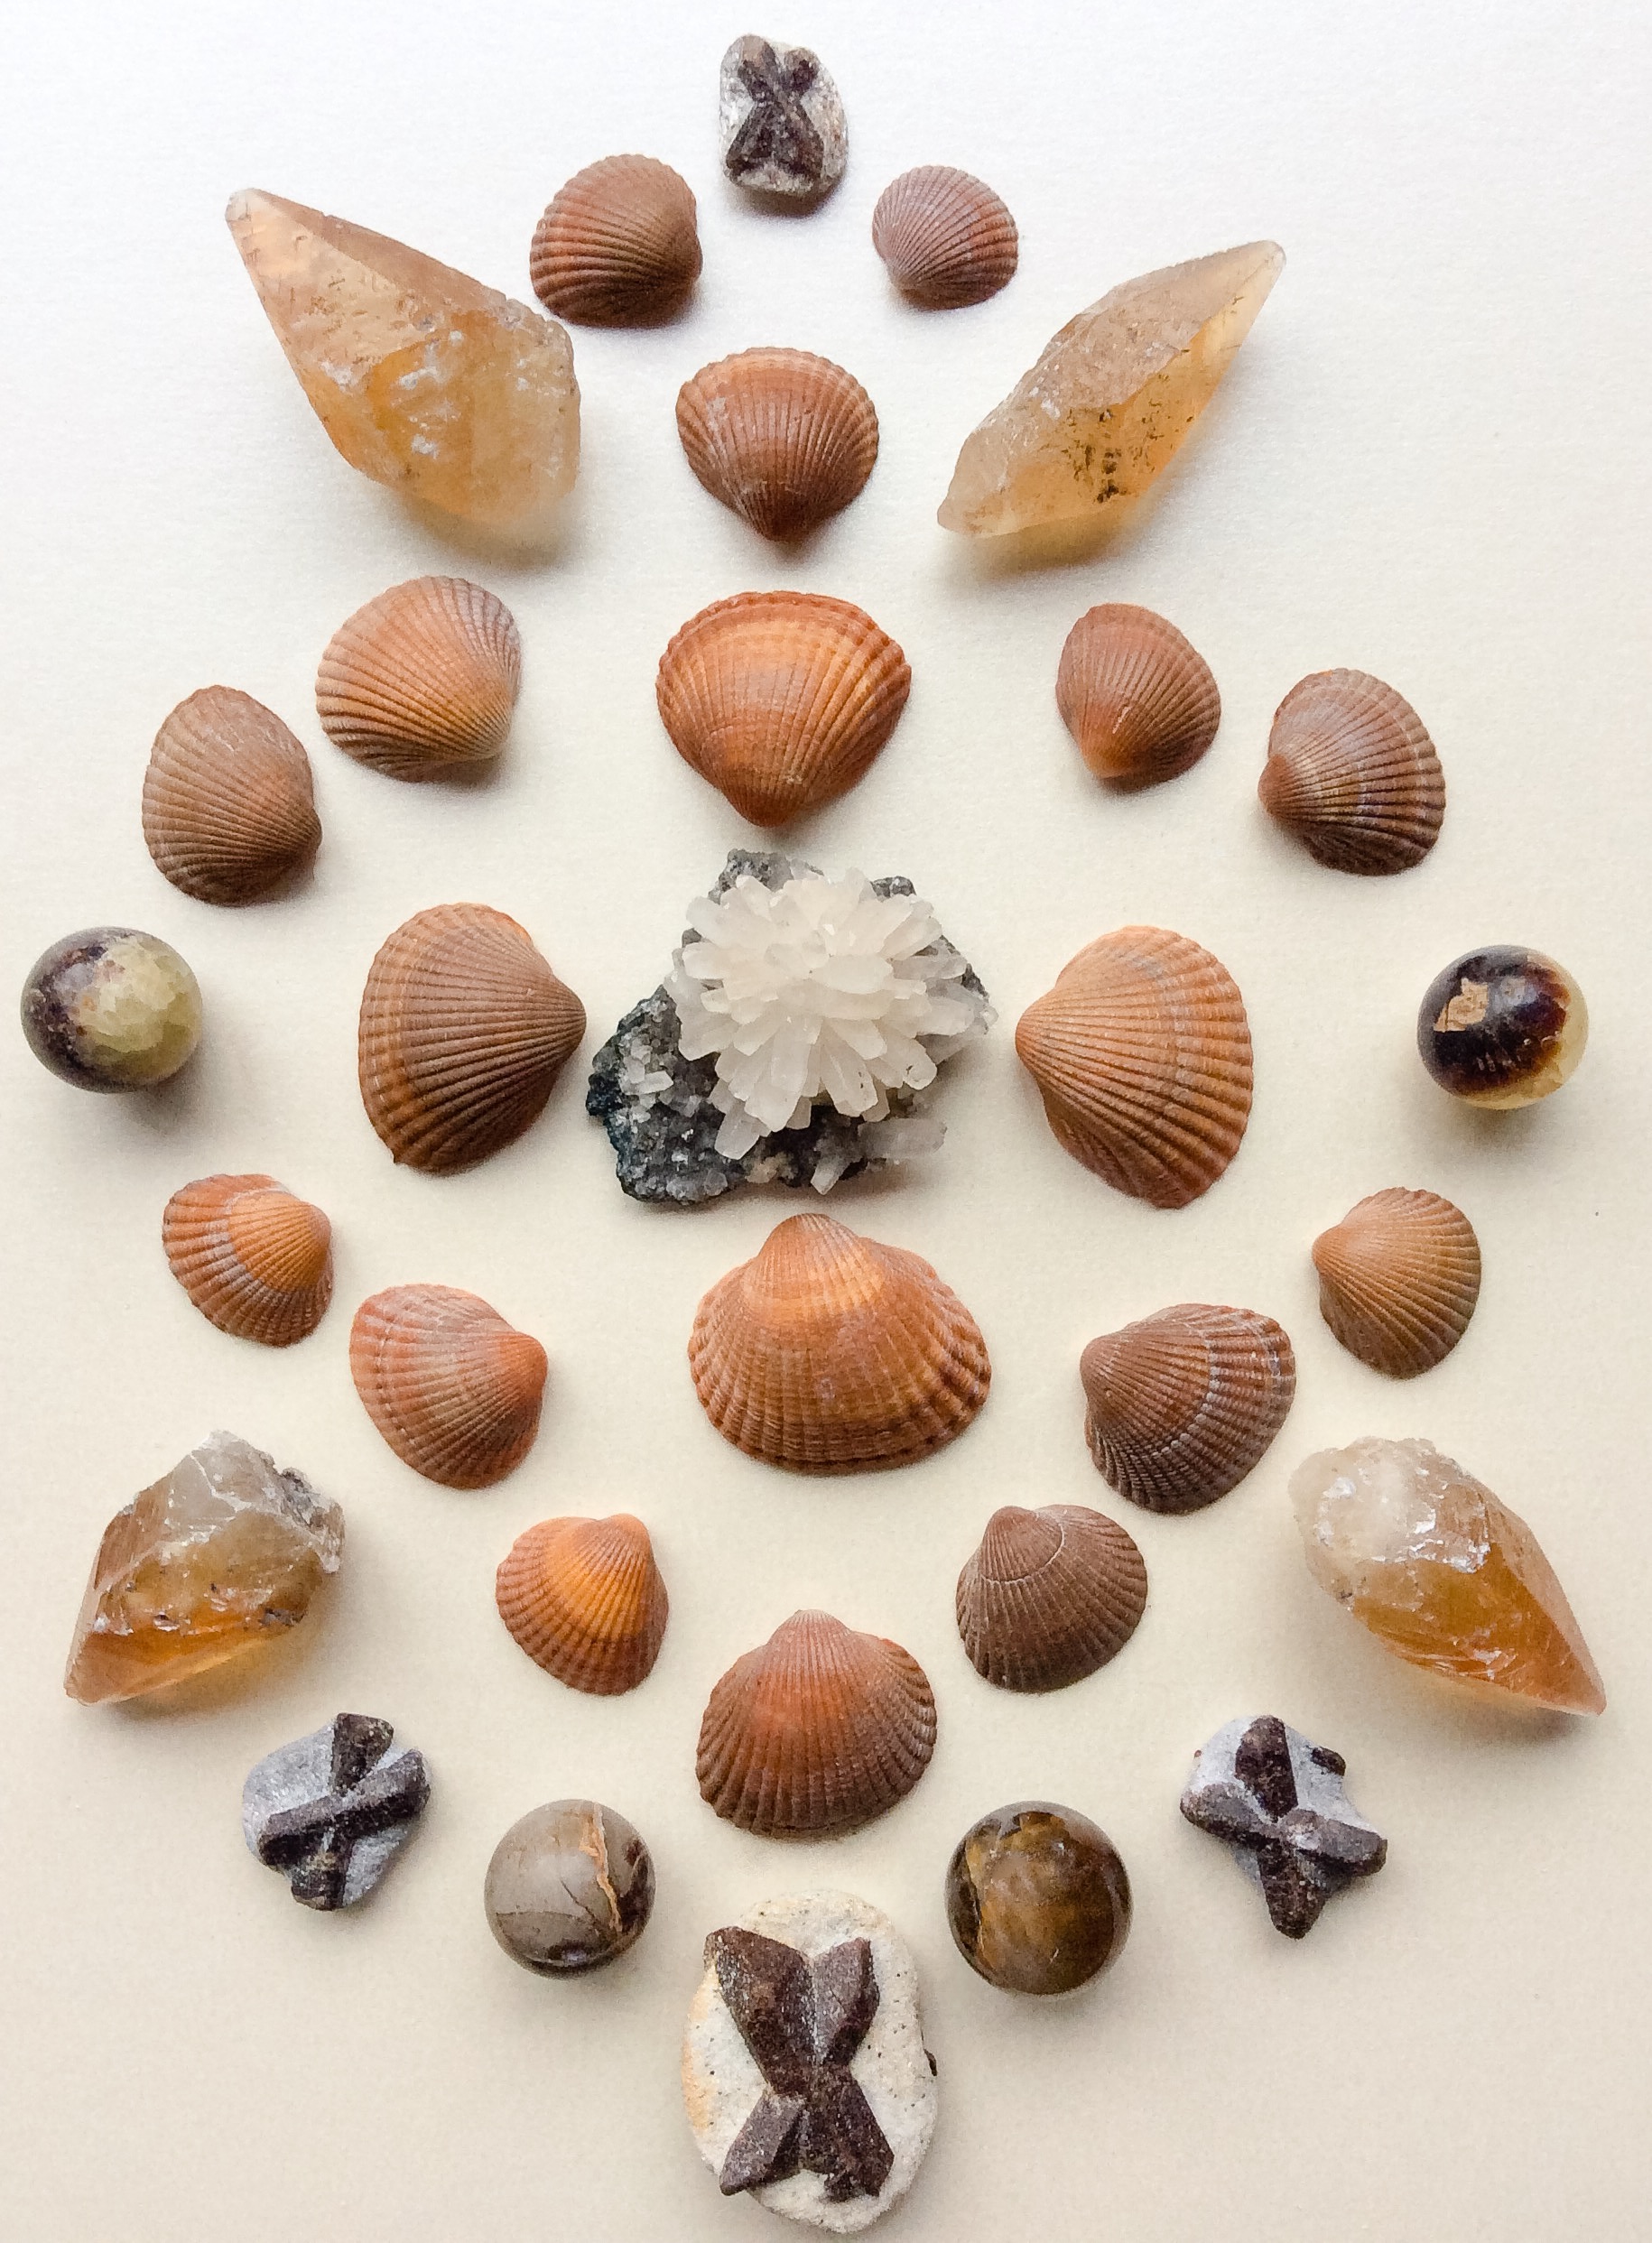 Calcite flower, Honey Calcite, Septarian, Staurolite and Shells from the beach in Vlissingen